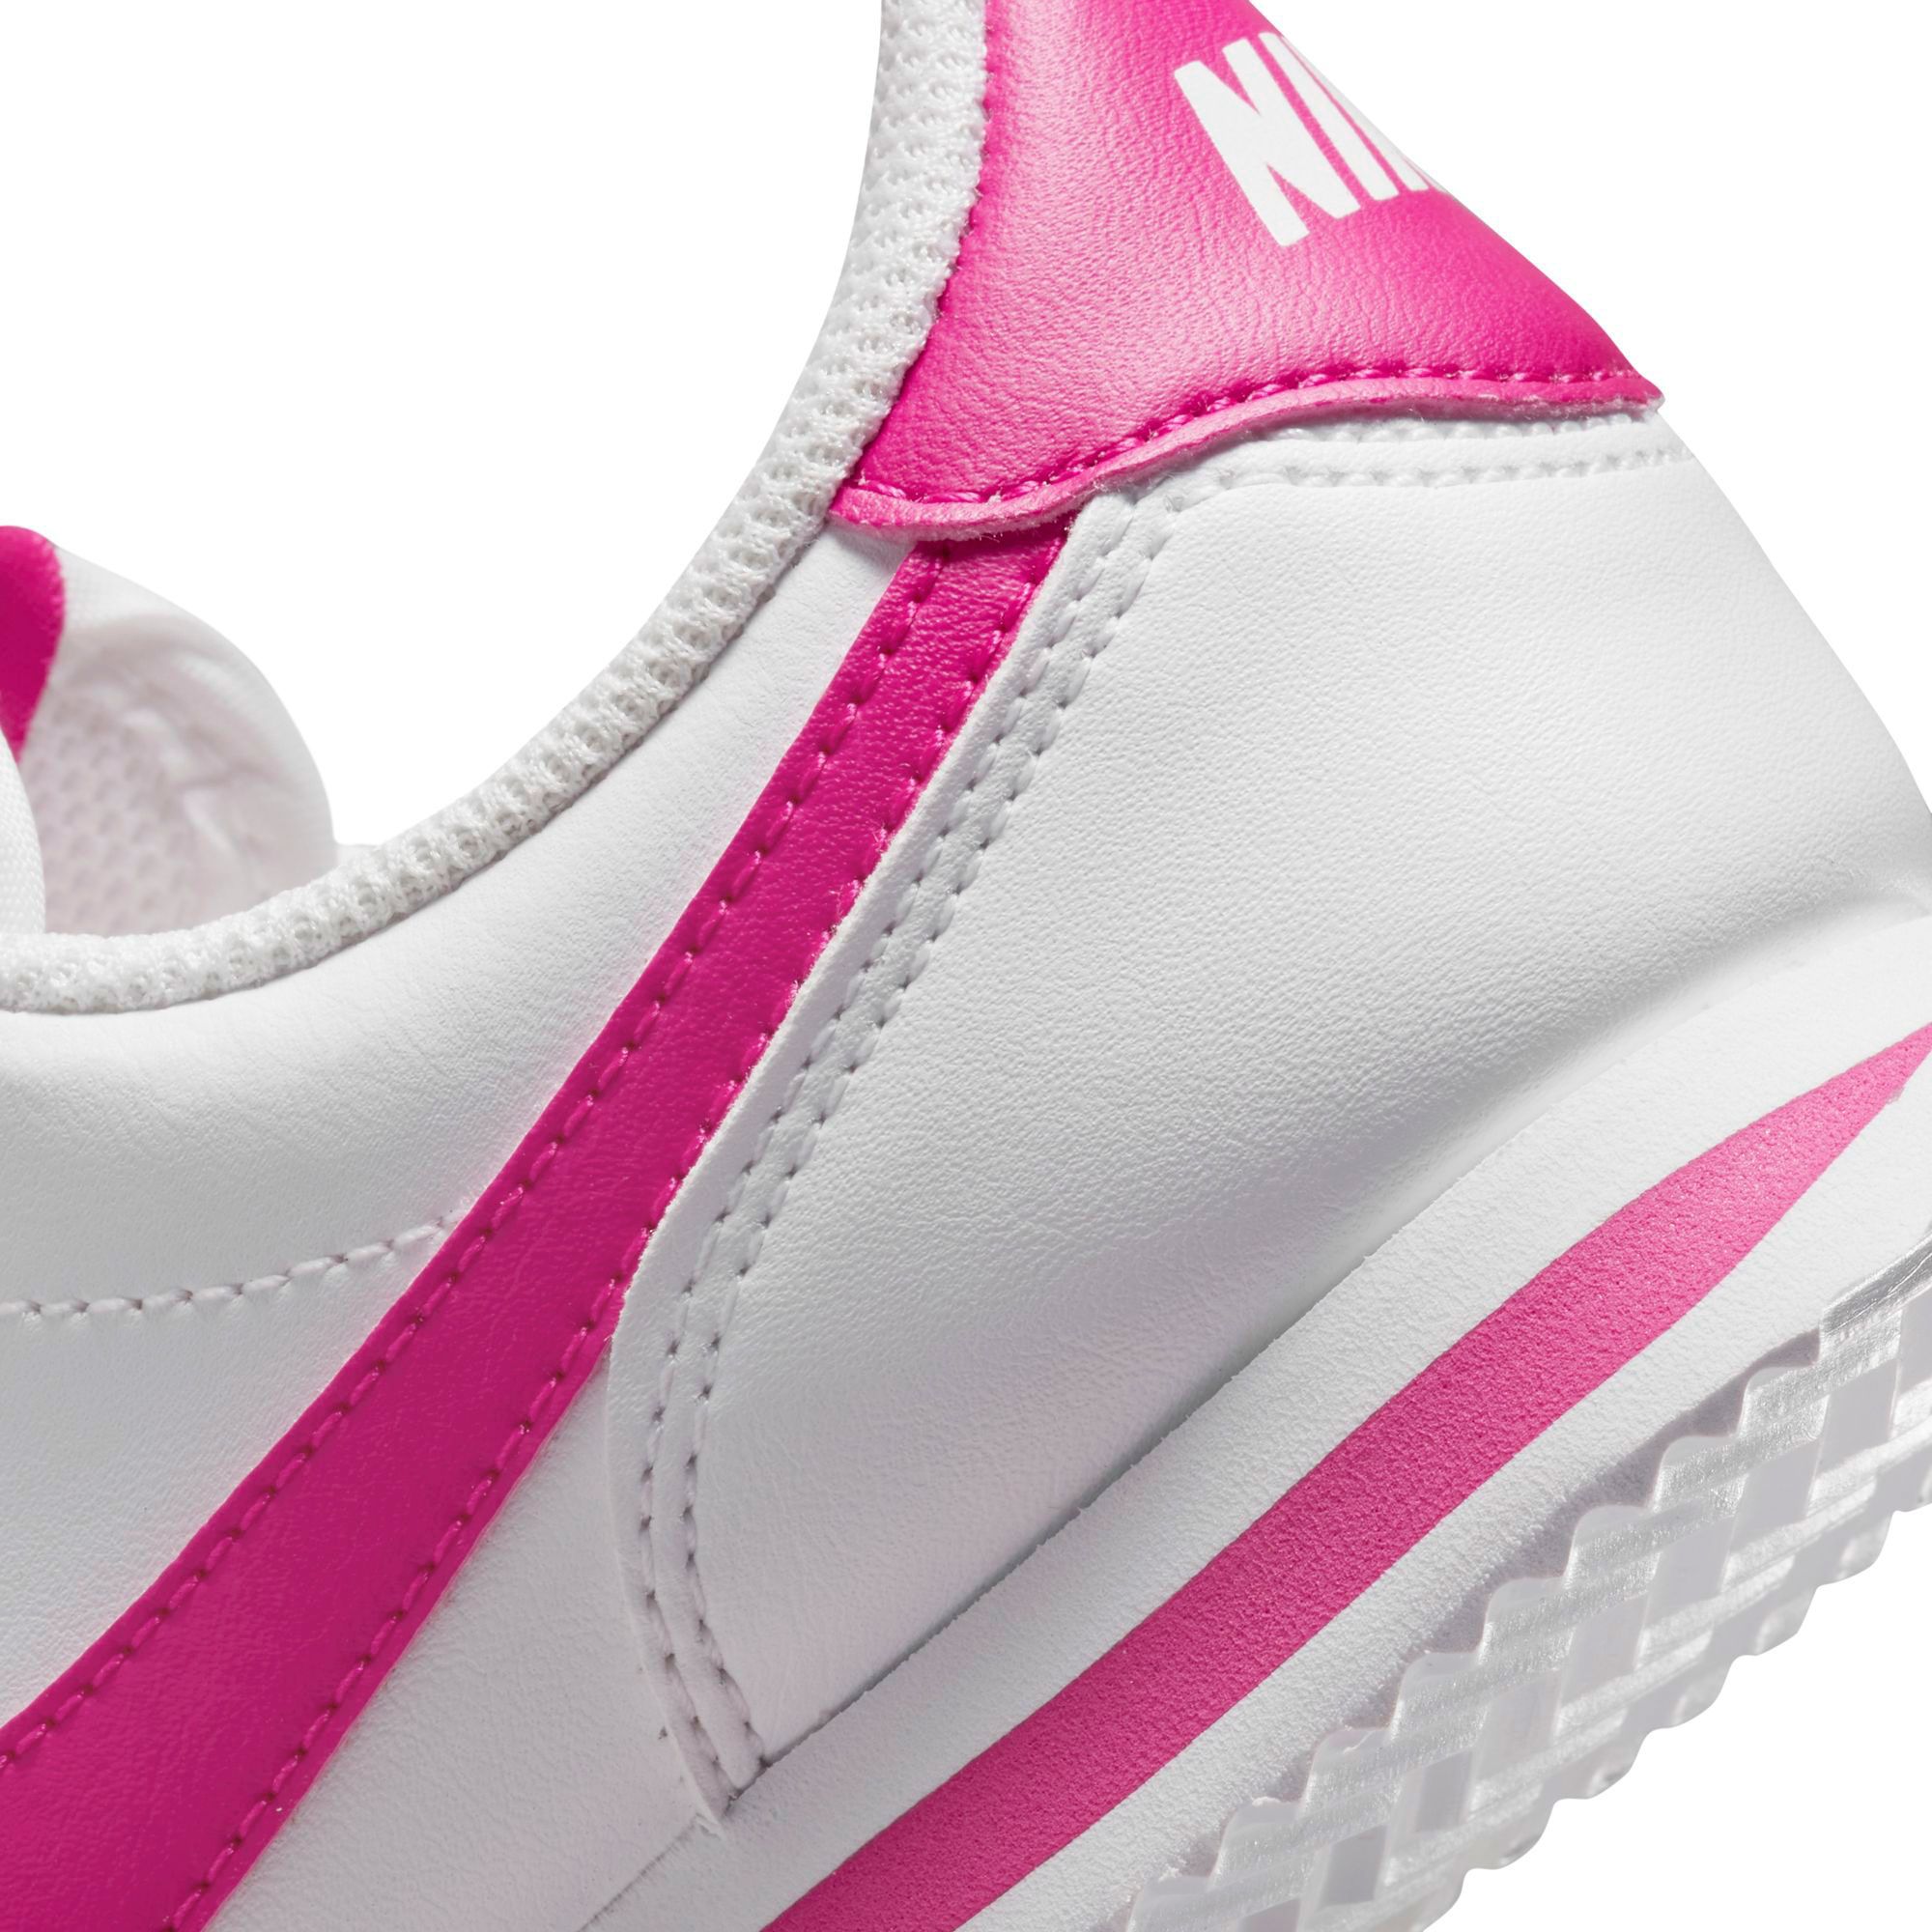 Cortez Basic SL GS 'White Hyper Pink